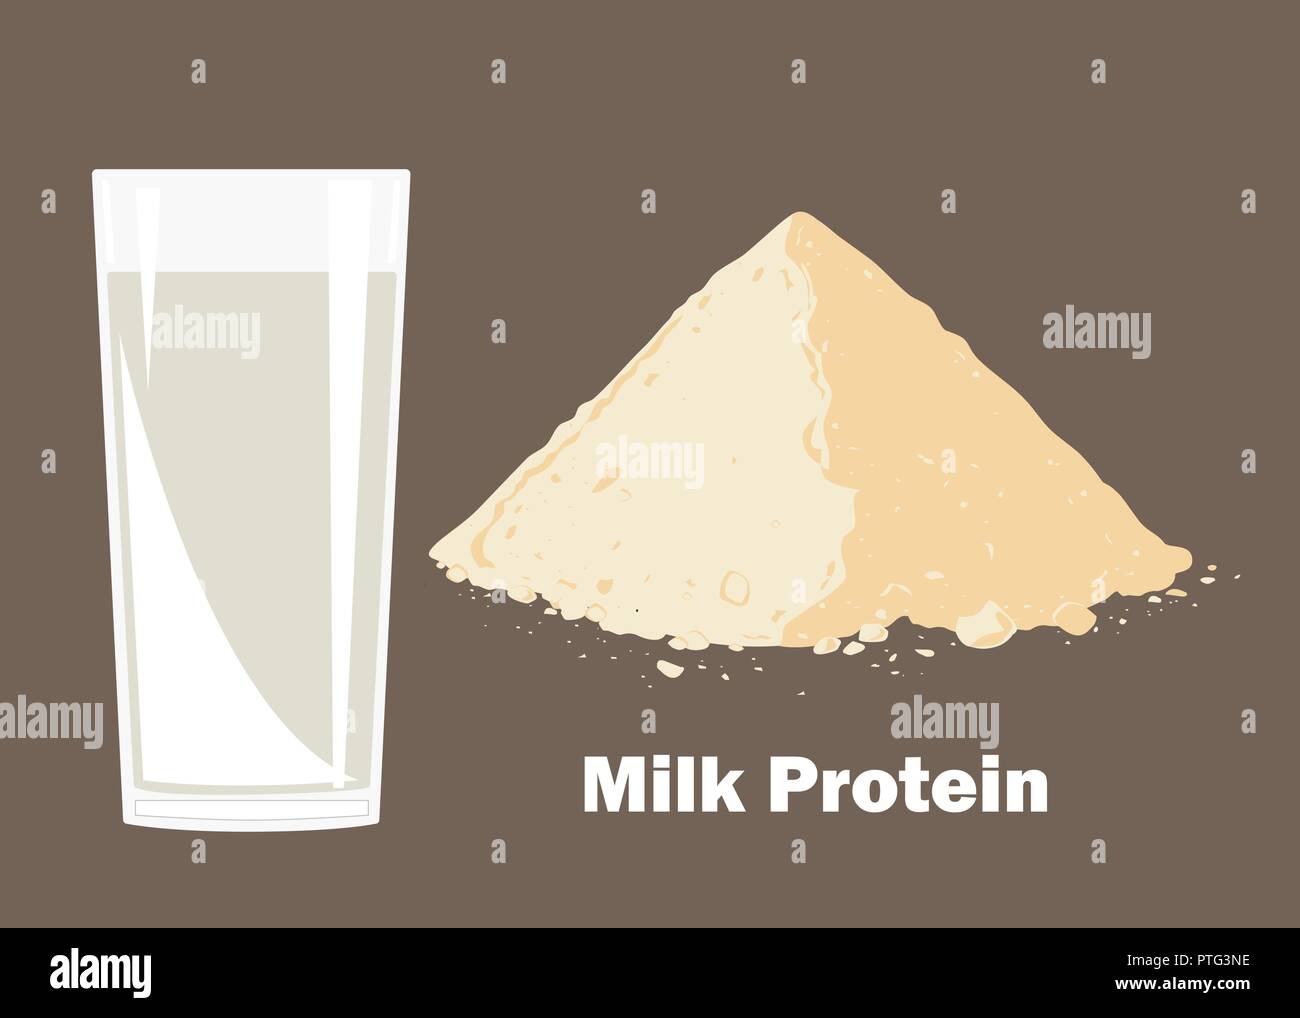 La poudre de protéine de lactalbumine et verre de lait. Vector illustration. Supplément de musculation concept. Illustration de Vecteur